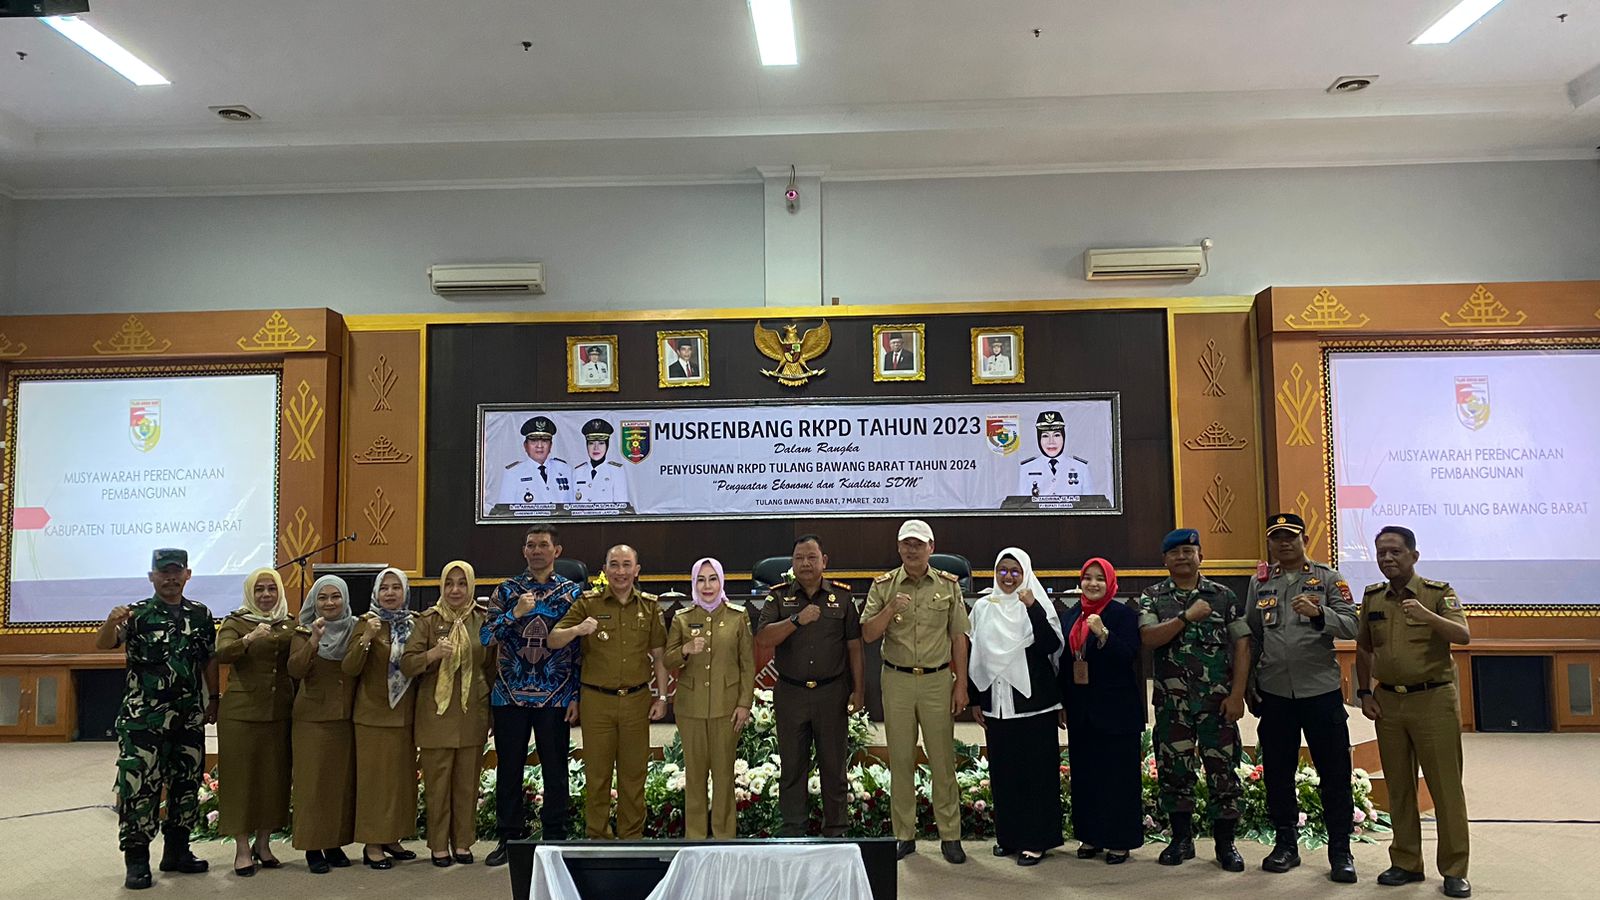 Mewakili Gubernur, Kepala Bappeda Mulyadi Irsan Buka Musrenbang RKPD Tahun 2024 Kabupaten Tulang Bawang Barat